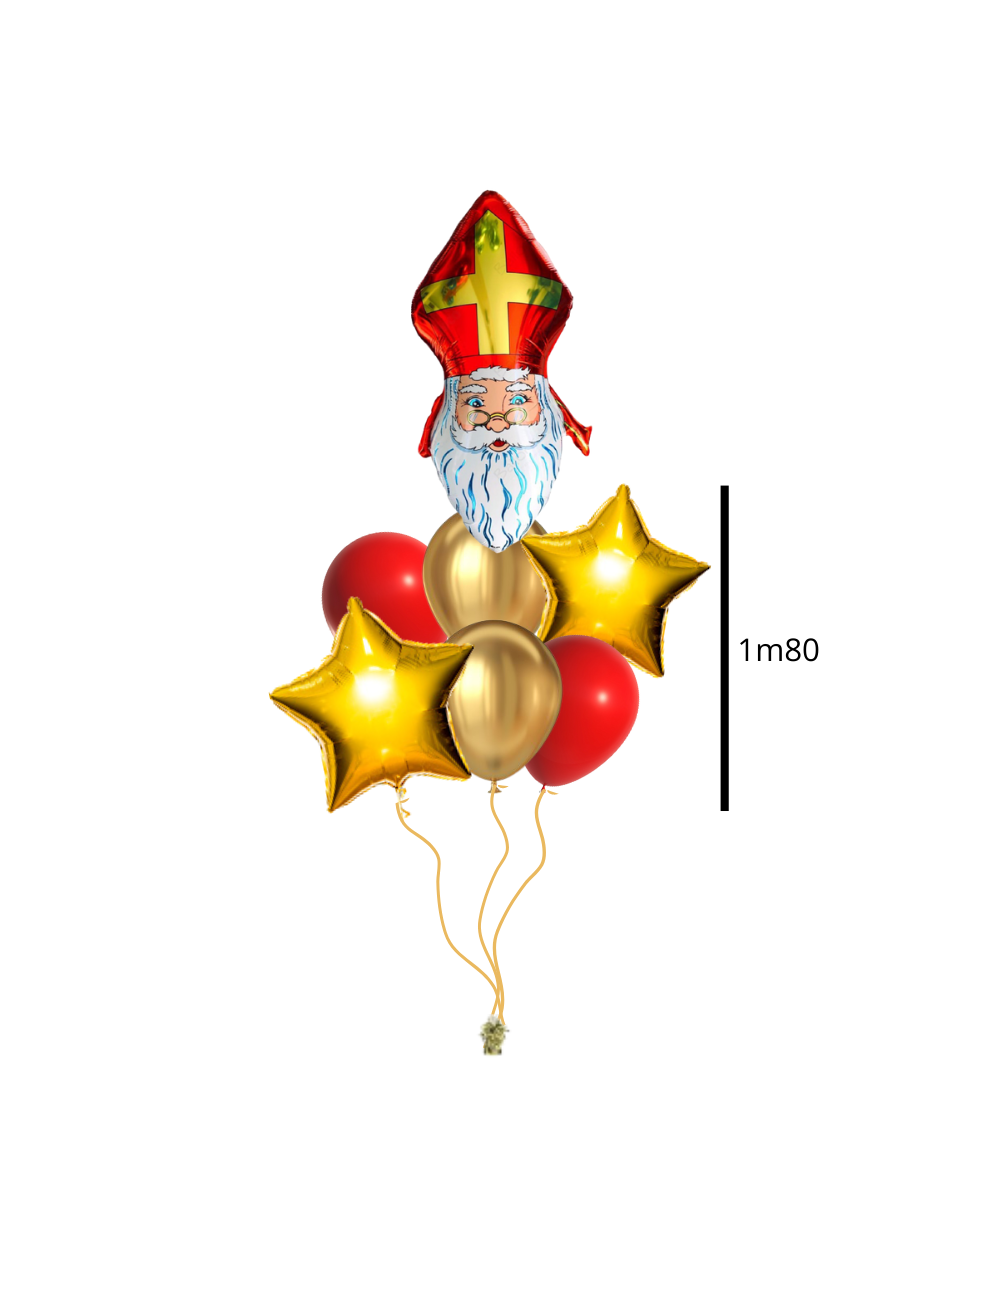 Ballon Hélium Rond Minnie Mouse - 43 cm - Jour de Fête - Minnie - LICENCES  ET THEMES